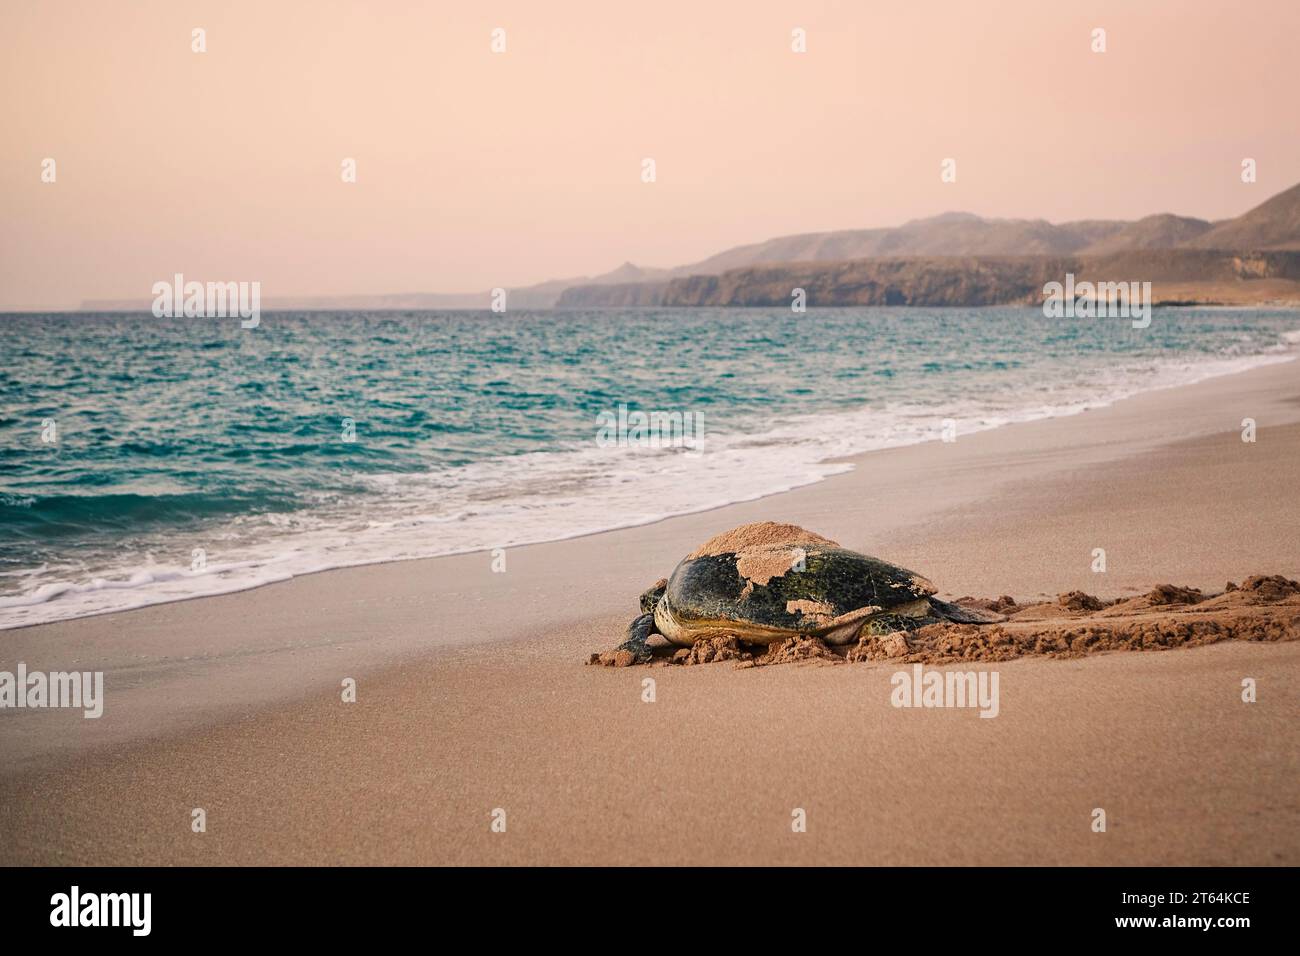 Énorme tortue verte se dirigeant vers l'océan après avoir pondu des œufs sur la plage. Lieu d'éclosion unique à Ras Al Jinz, Sultanat d'Oman. Banque D'Images